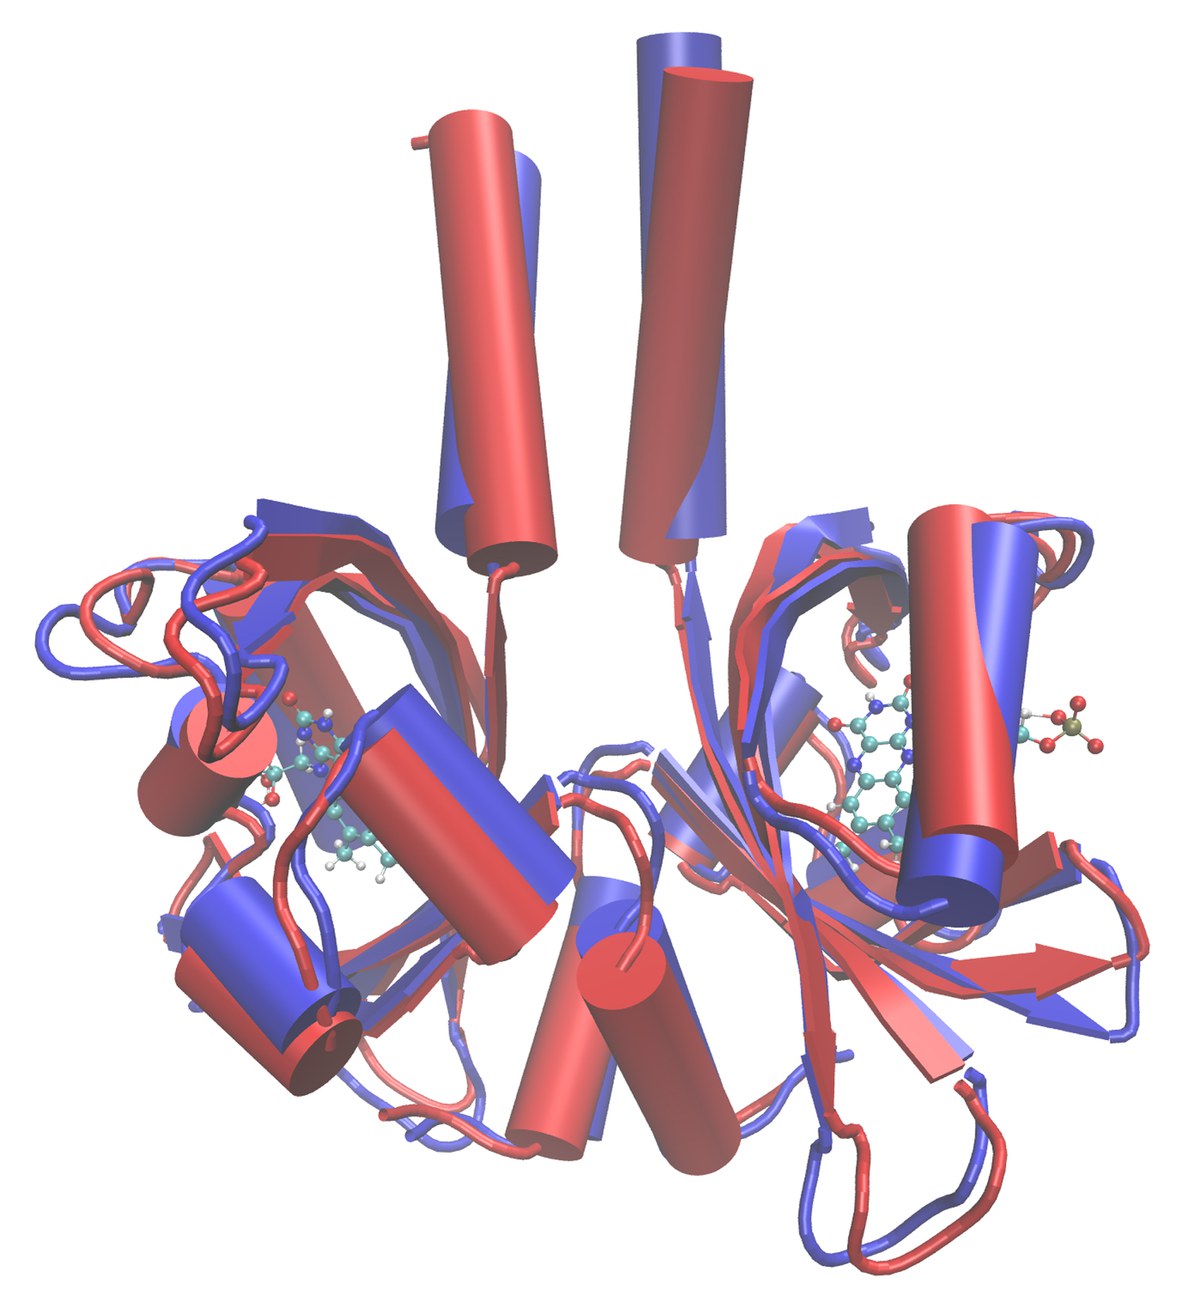 LOV-Proteine